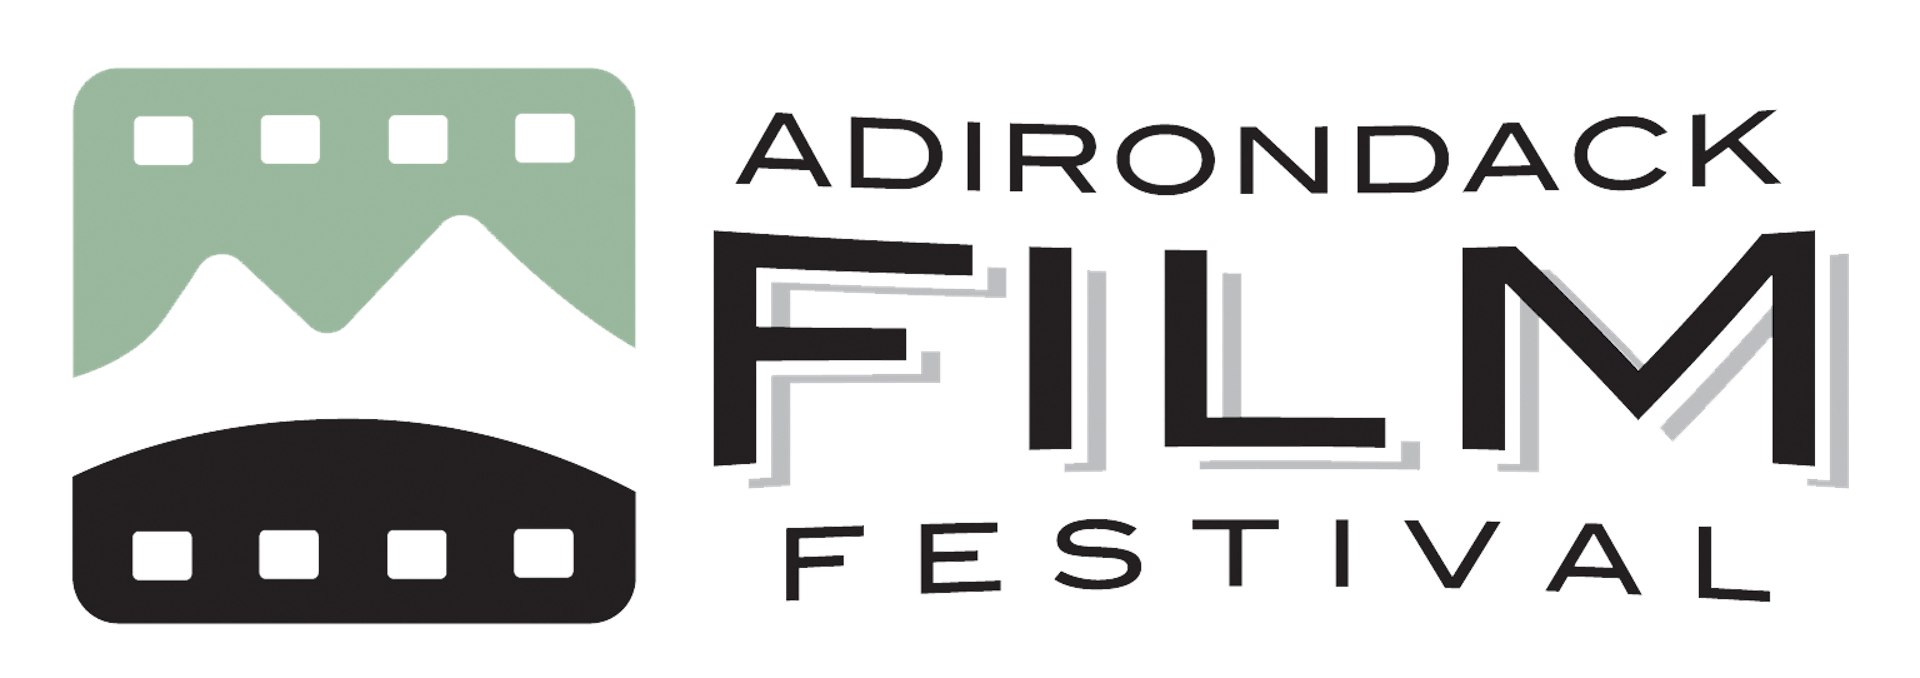 Schedule | Adirondack Film Festival 2021